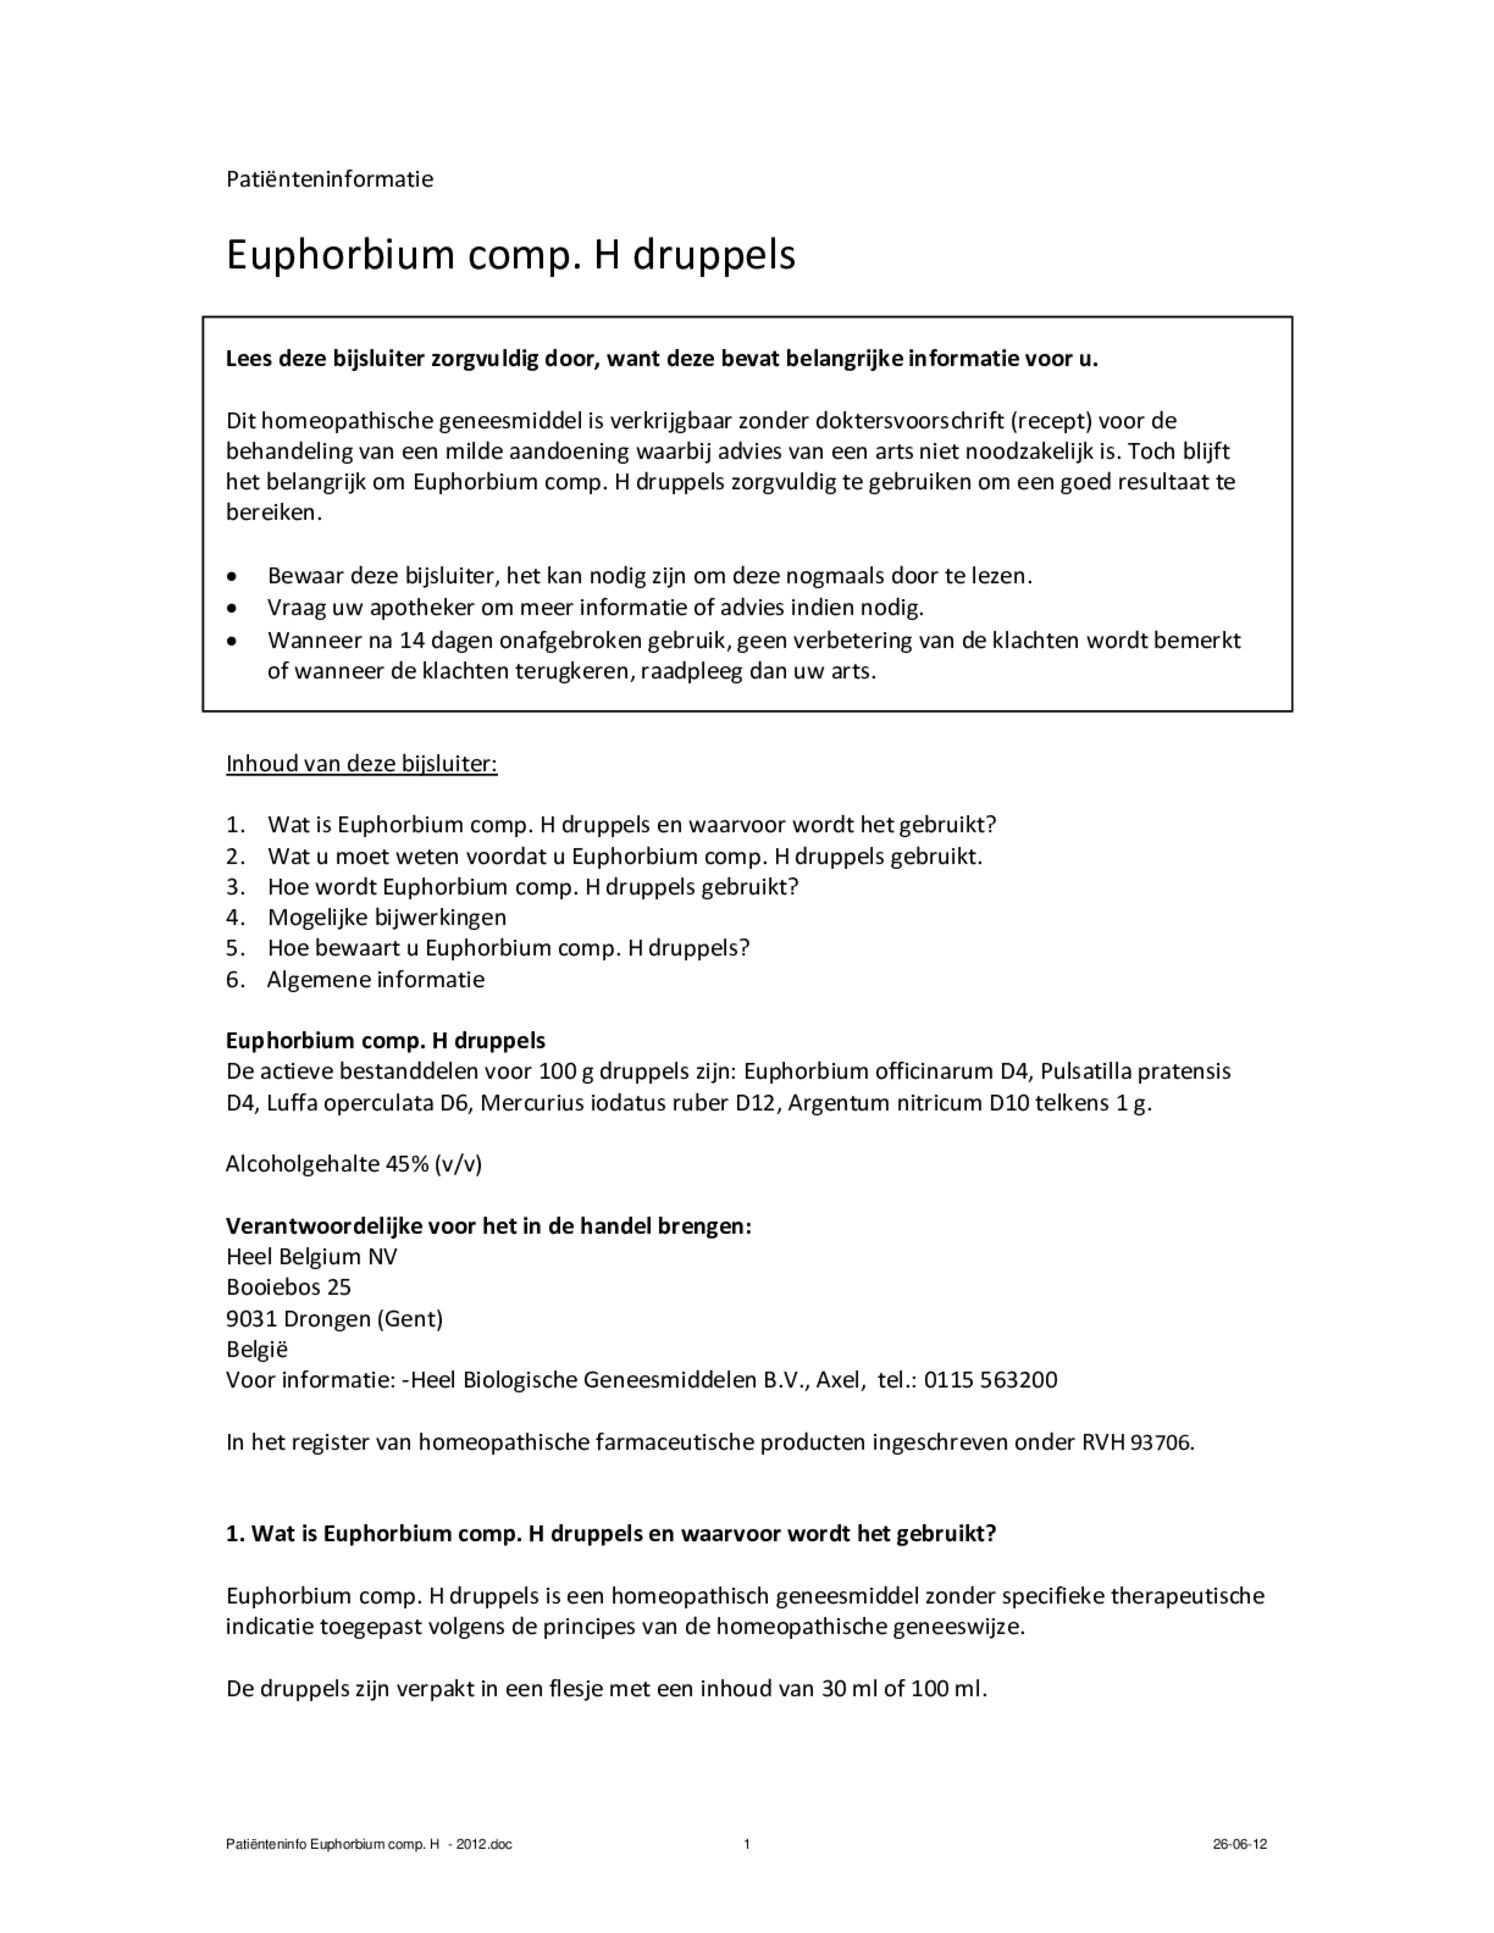 Euphorbium Compositum Druppels afbeelding van document #1, bijsluiter